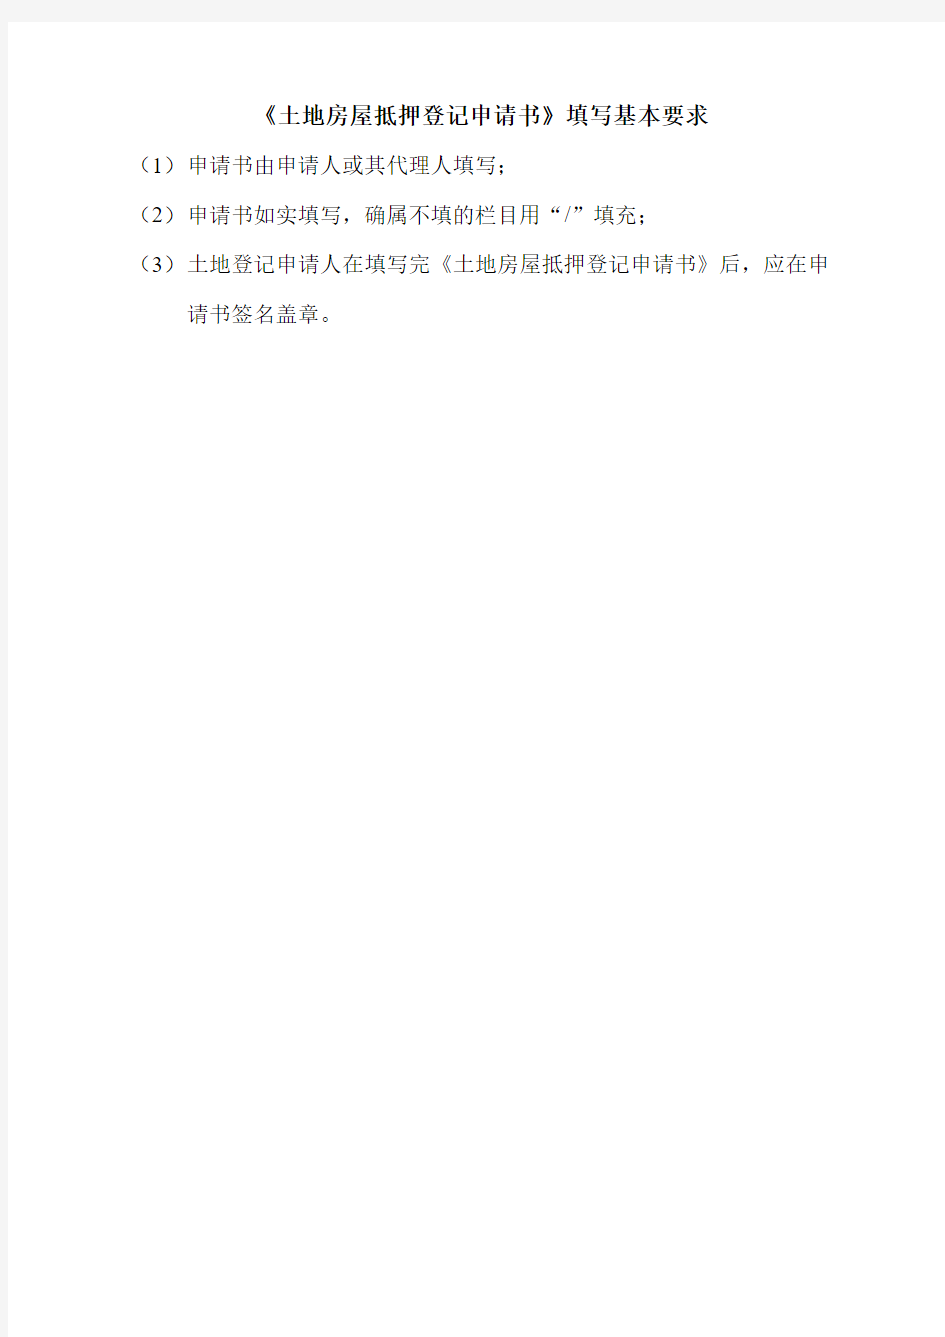 重庆市土地房屋抵押登记申请书